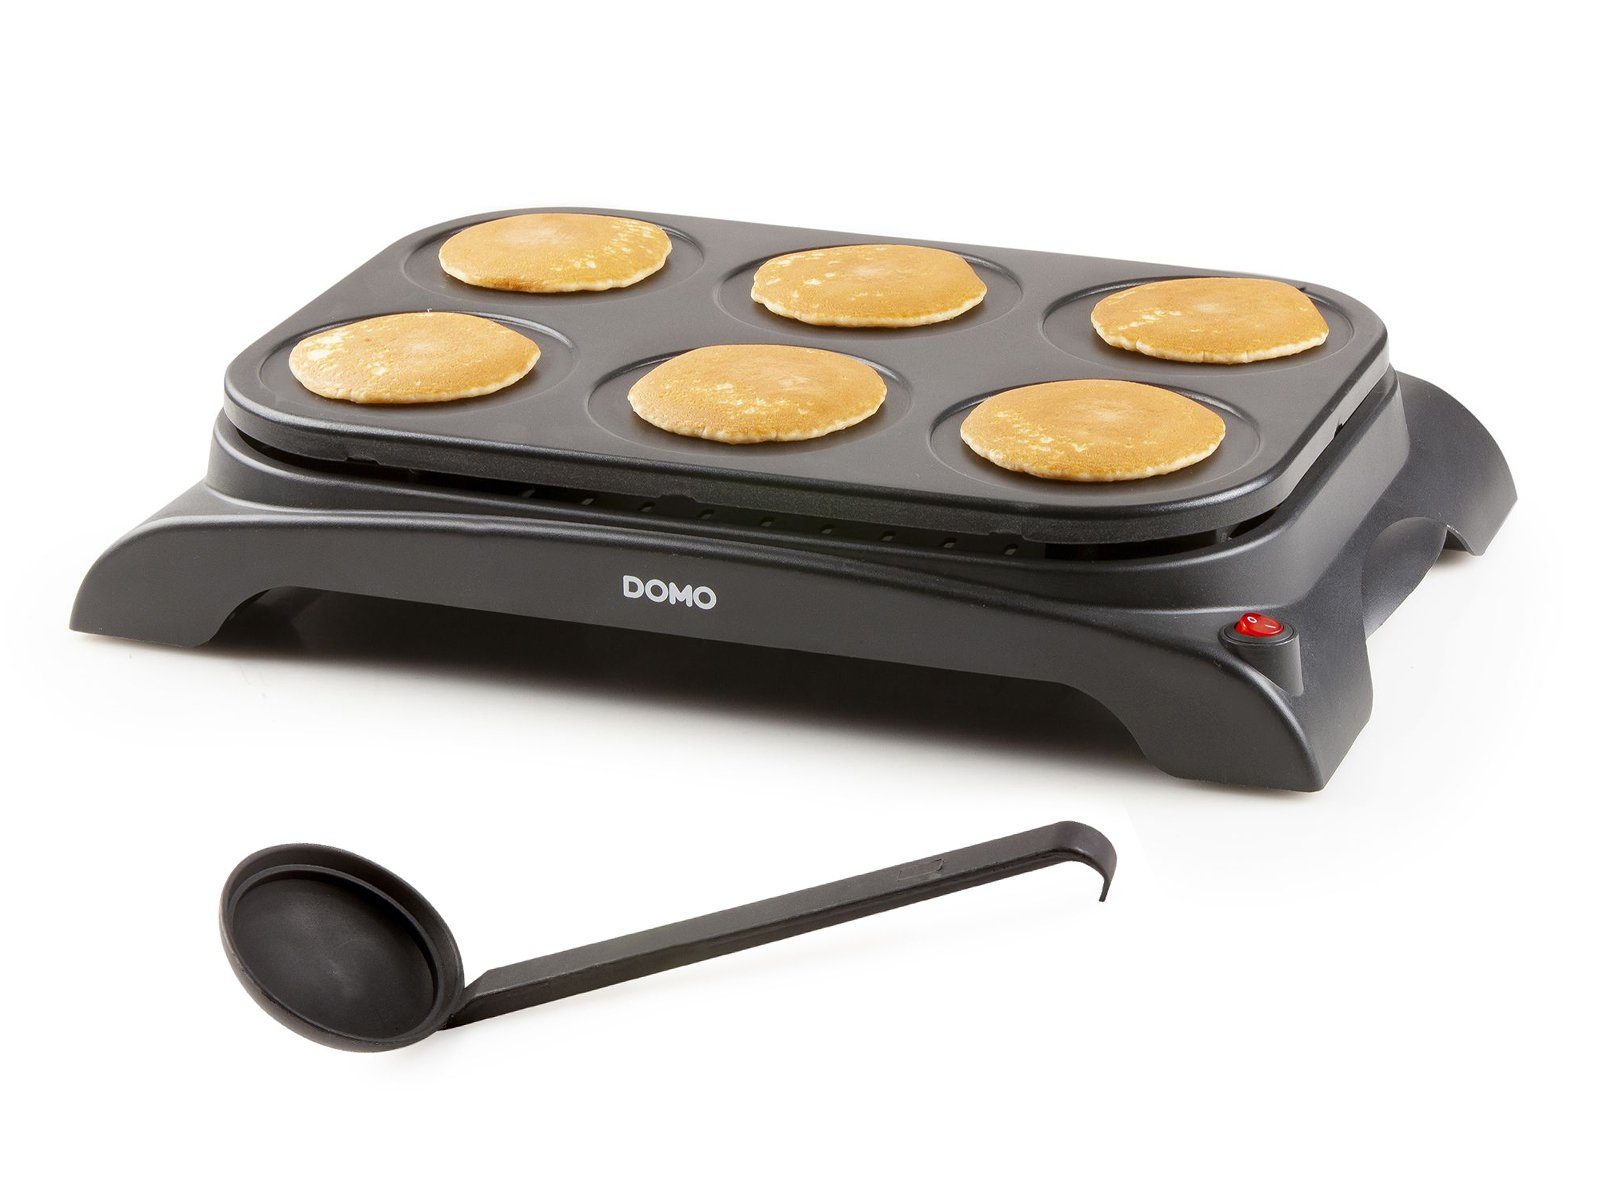 Domo W, 11.5 salzige Crêpesmaker, 1000 Ø Creperie cm, machen süße Pancake 6 selber Crepes-Eisen Pfannkuchen